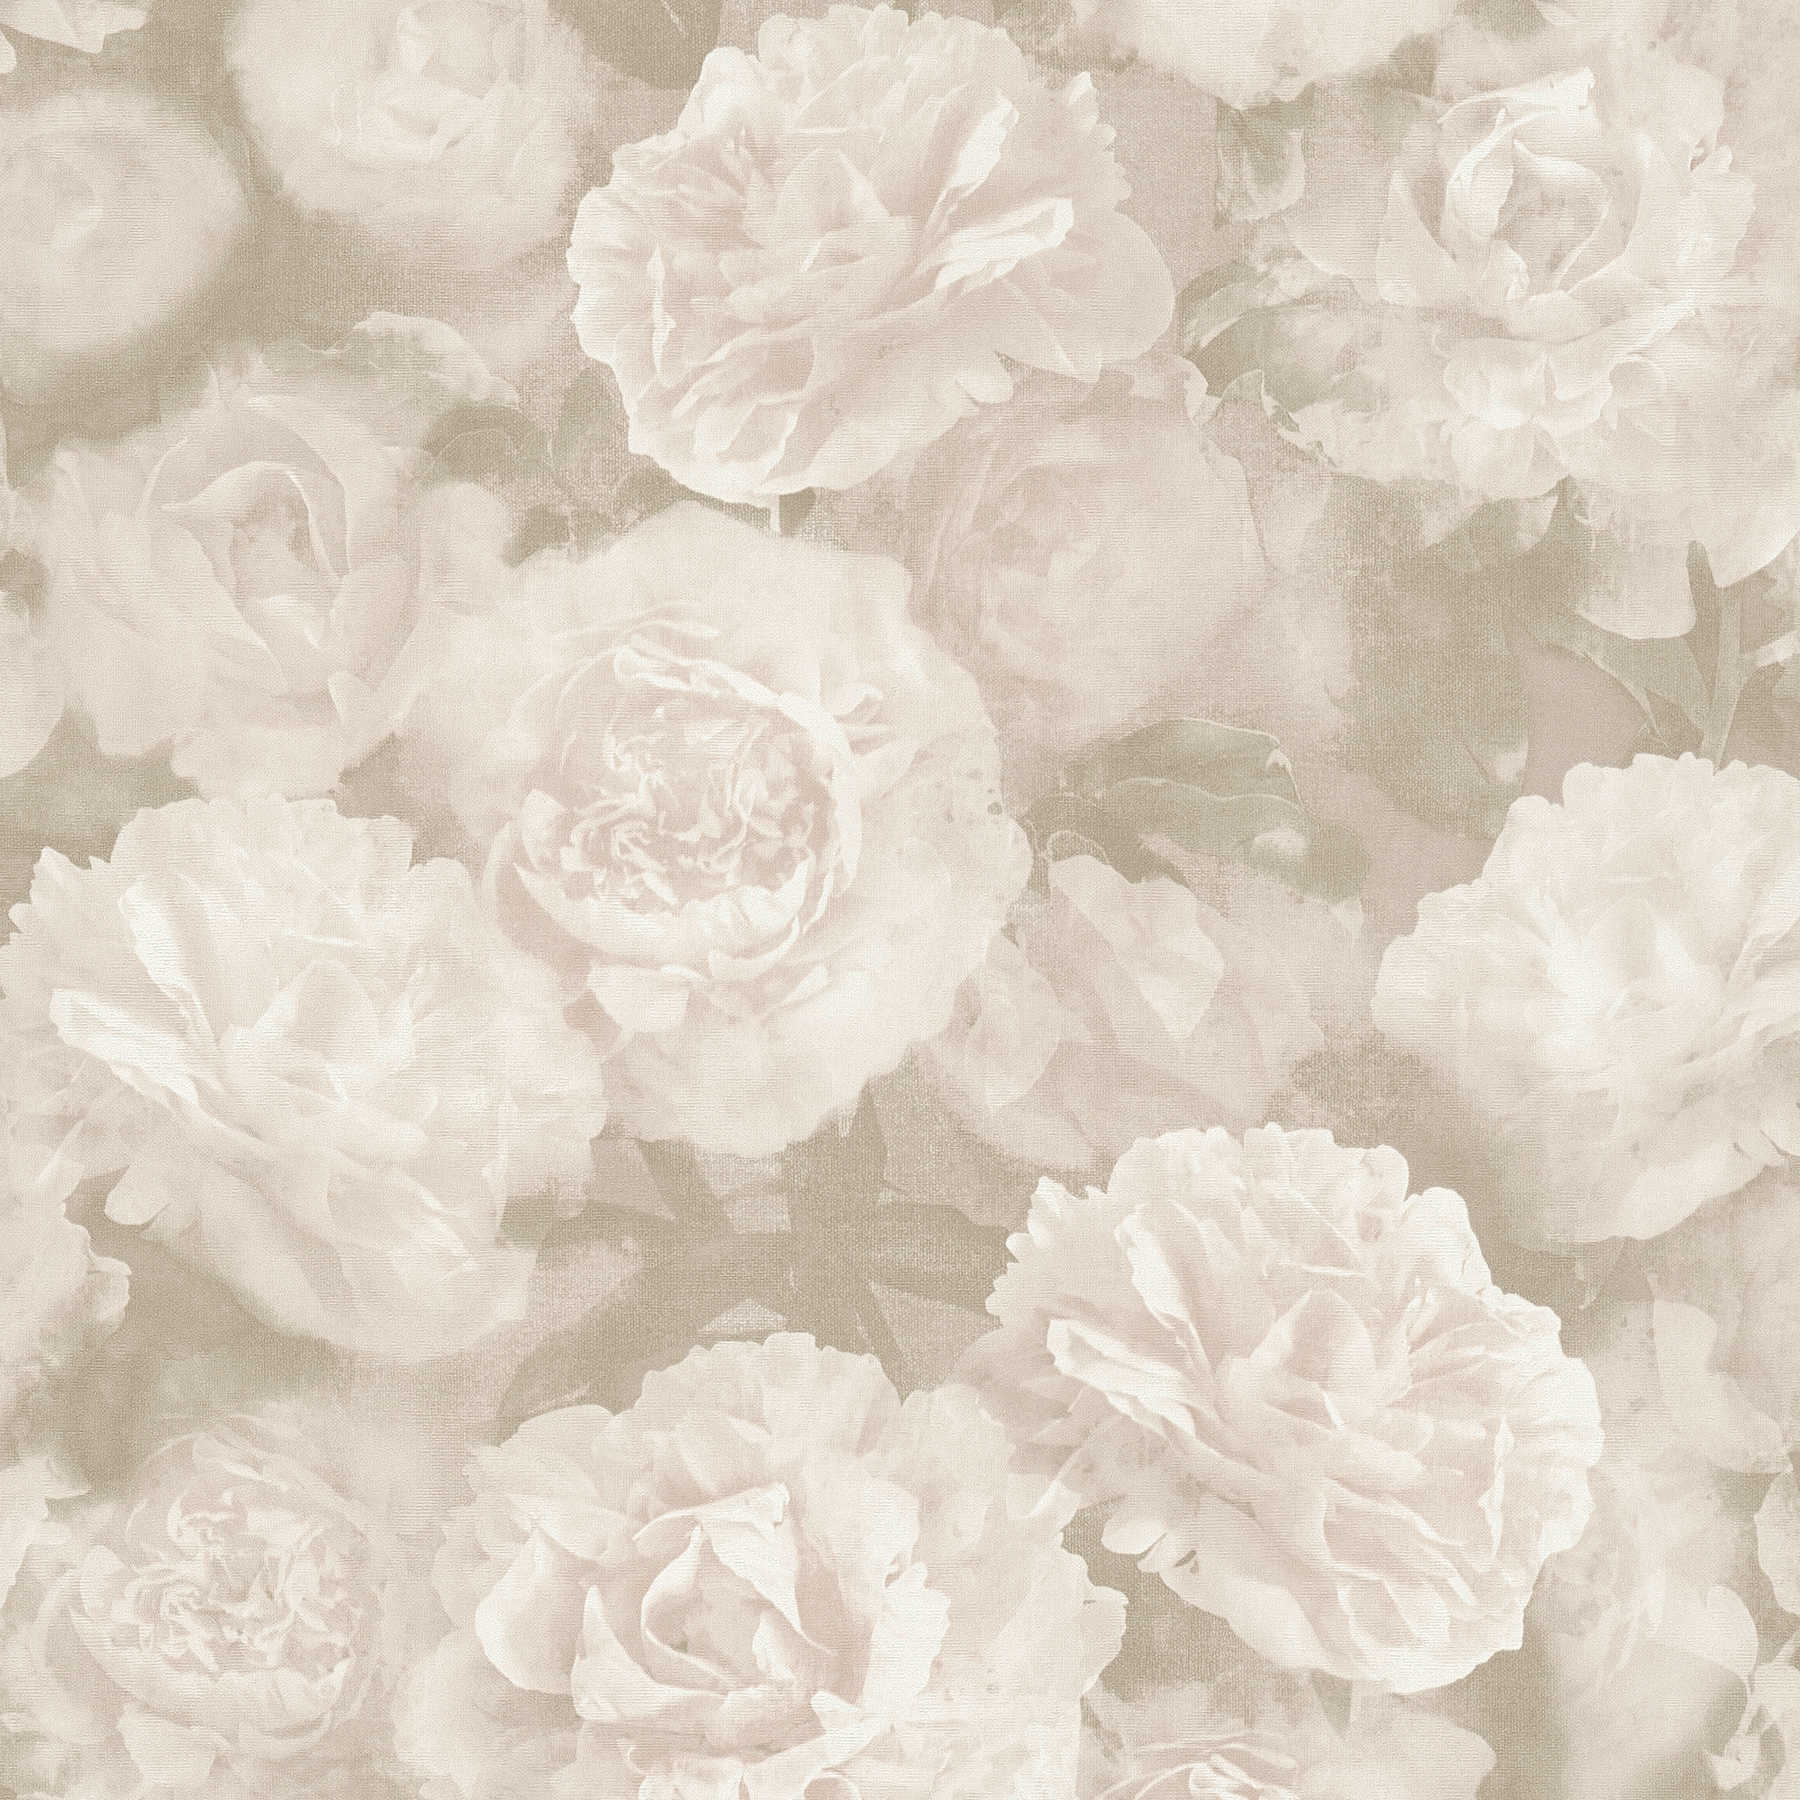 Blumentapete Rosen im Vintage Look – Beige, Creme, Weiß
